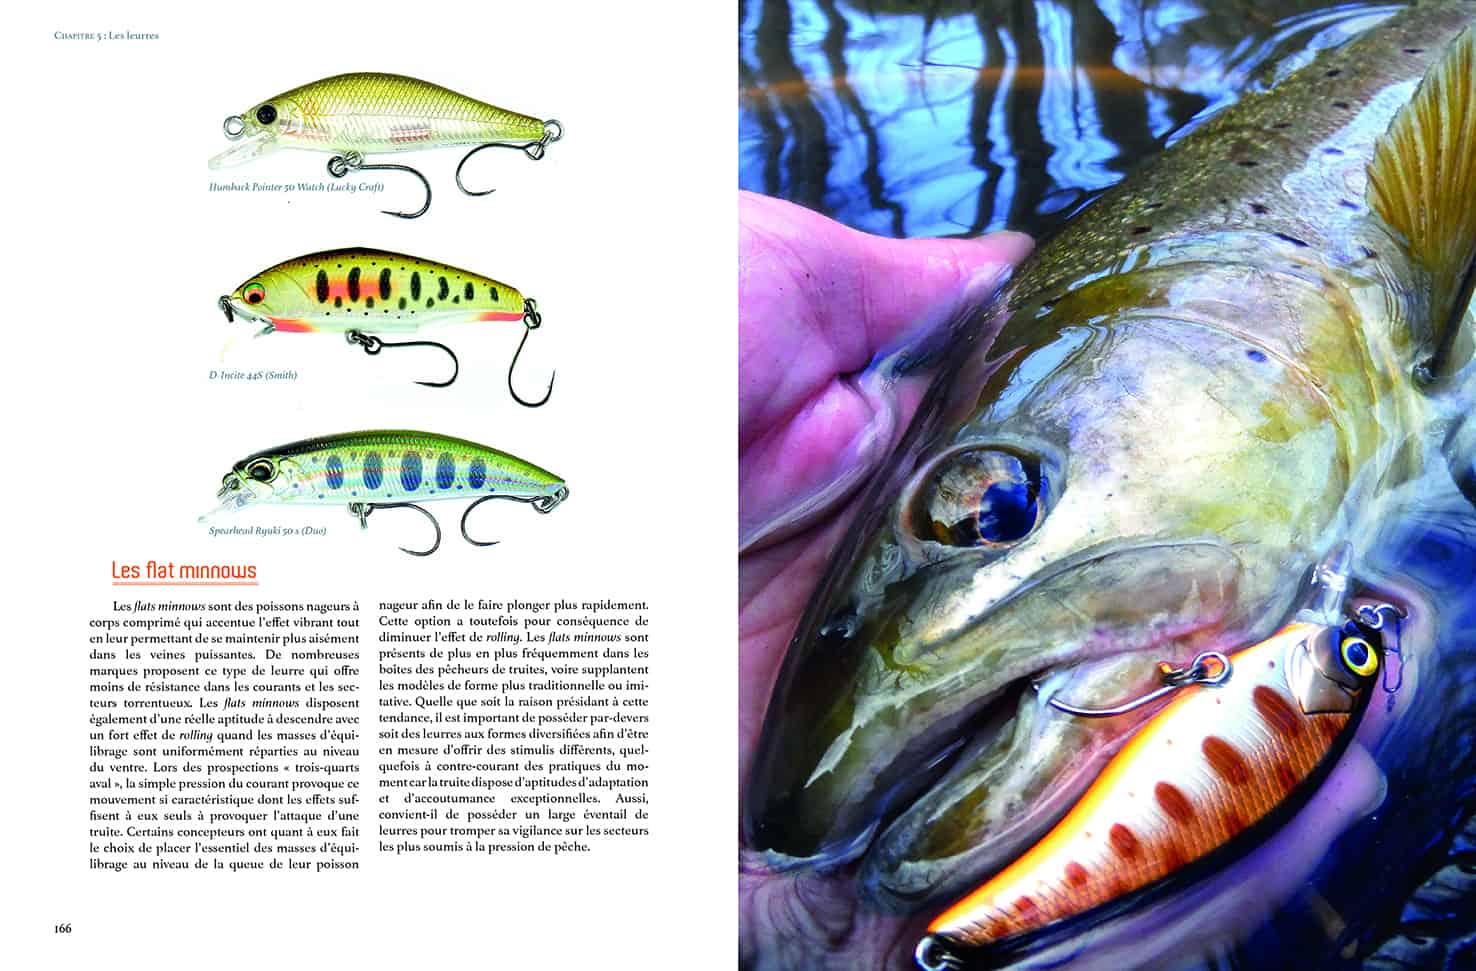 Livre Le guide de la pêche en eau douce - Tout sur les poissons